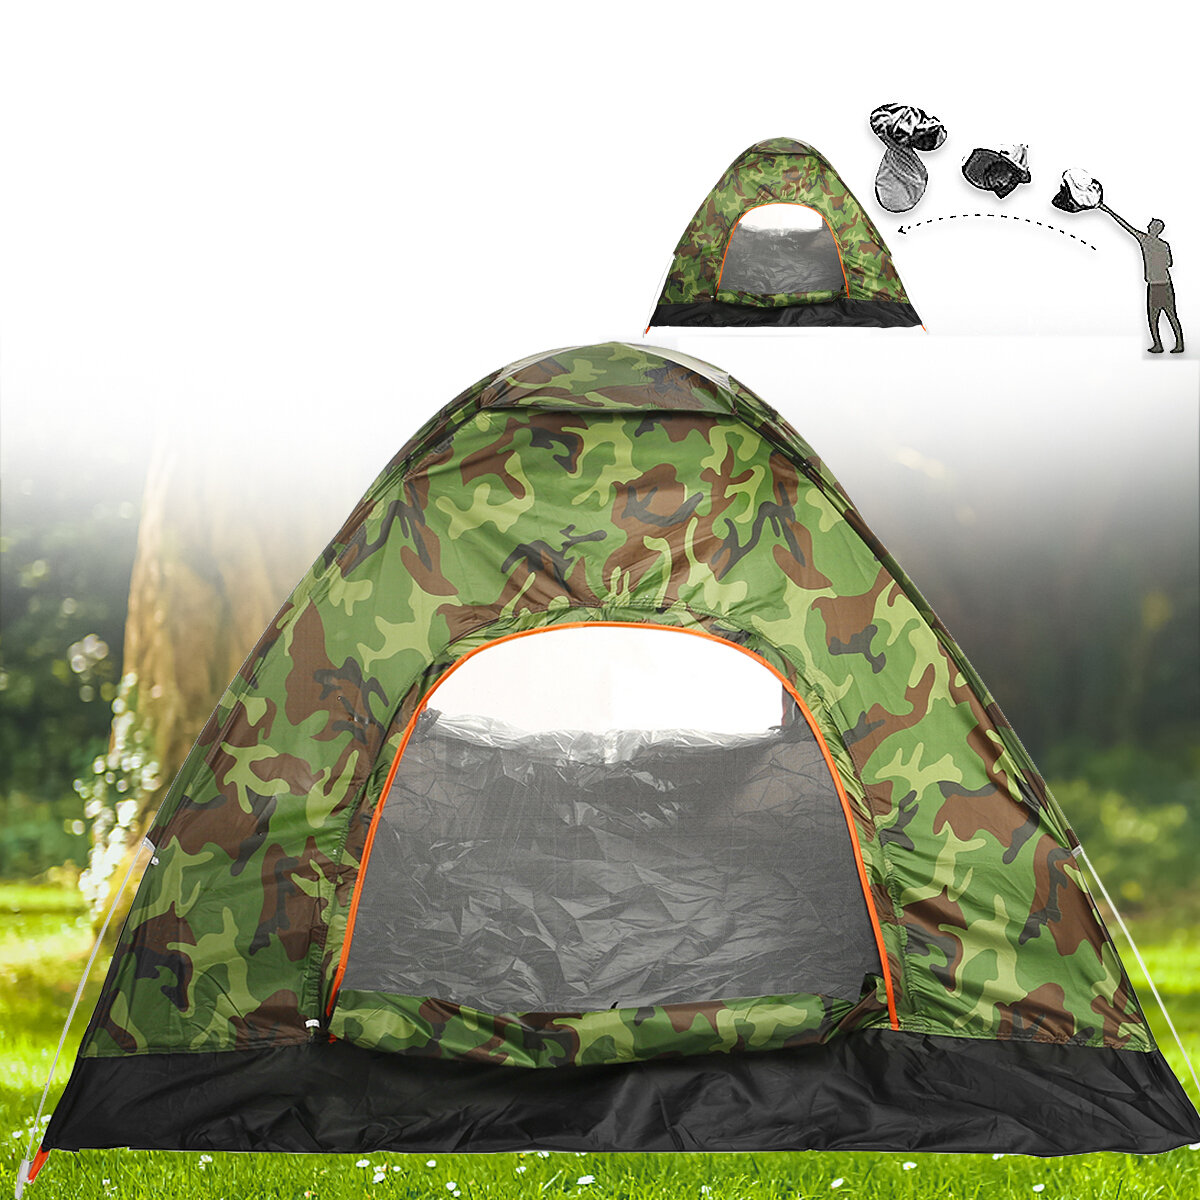 Tenda da campeggio automatica IPRee® per 1-4 persone, impermeabile, antivento, anti-UV, ombreggiante, ultraleggera per viaggi e escursioni.